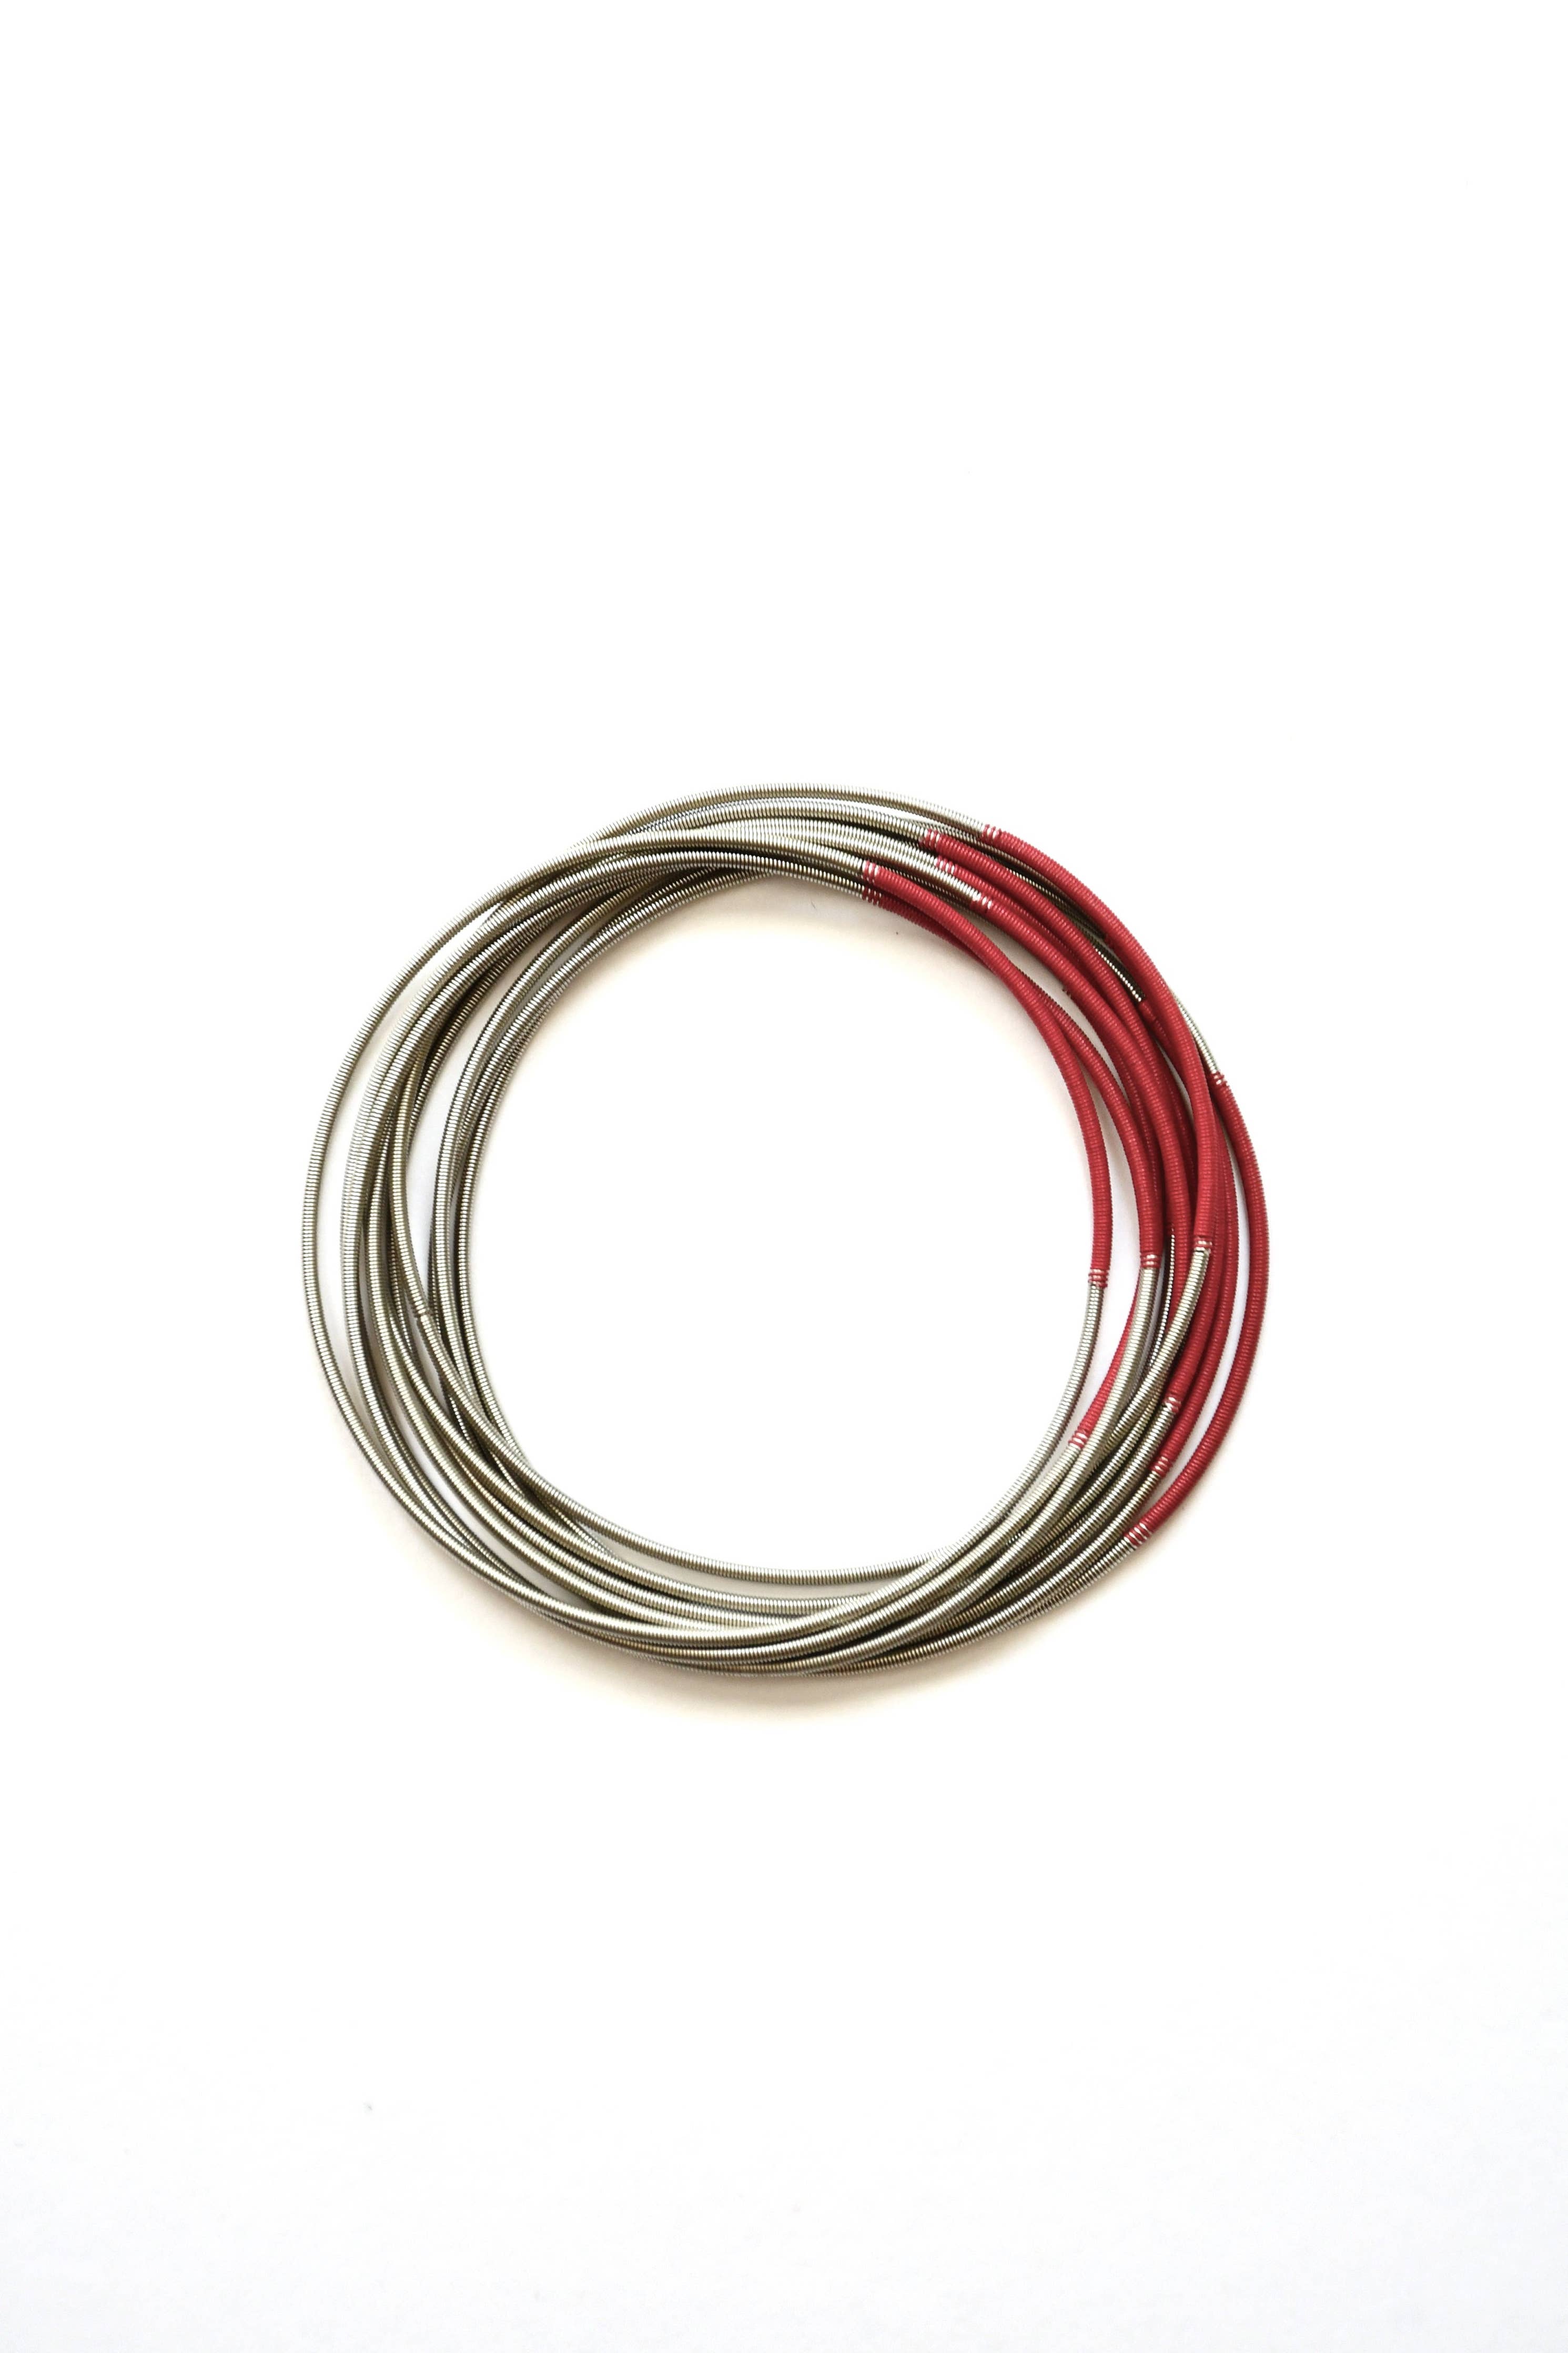 Sea Lily - S107C-BR - Multi Strand Silver Wire Bracelet With Red Segmen